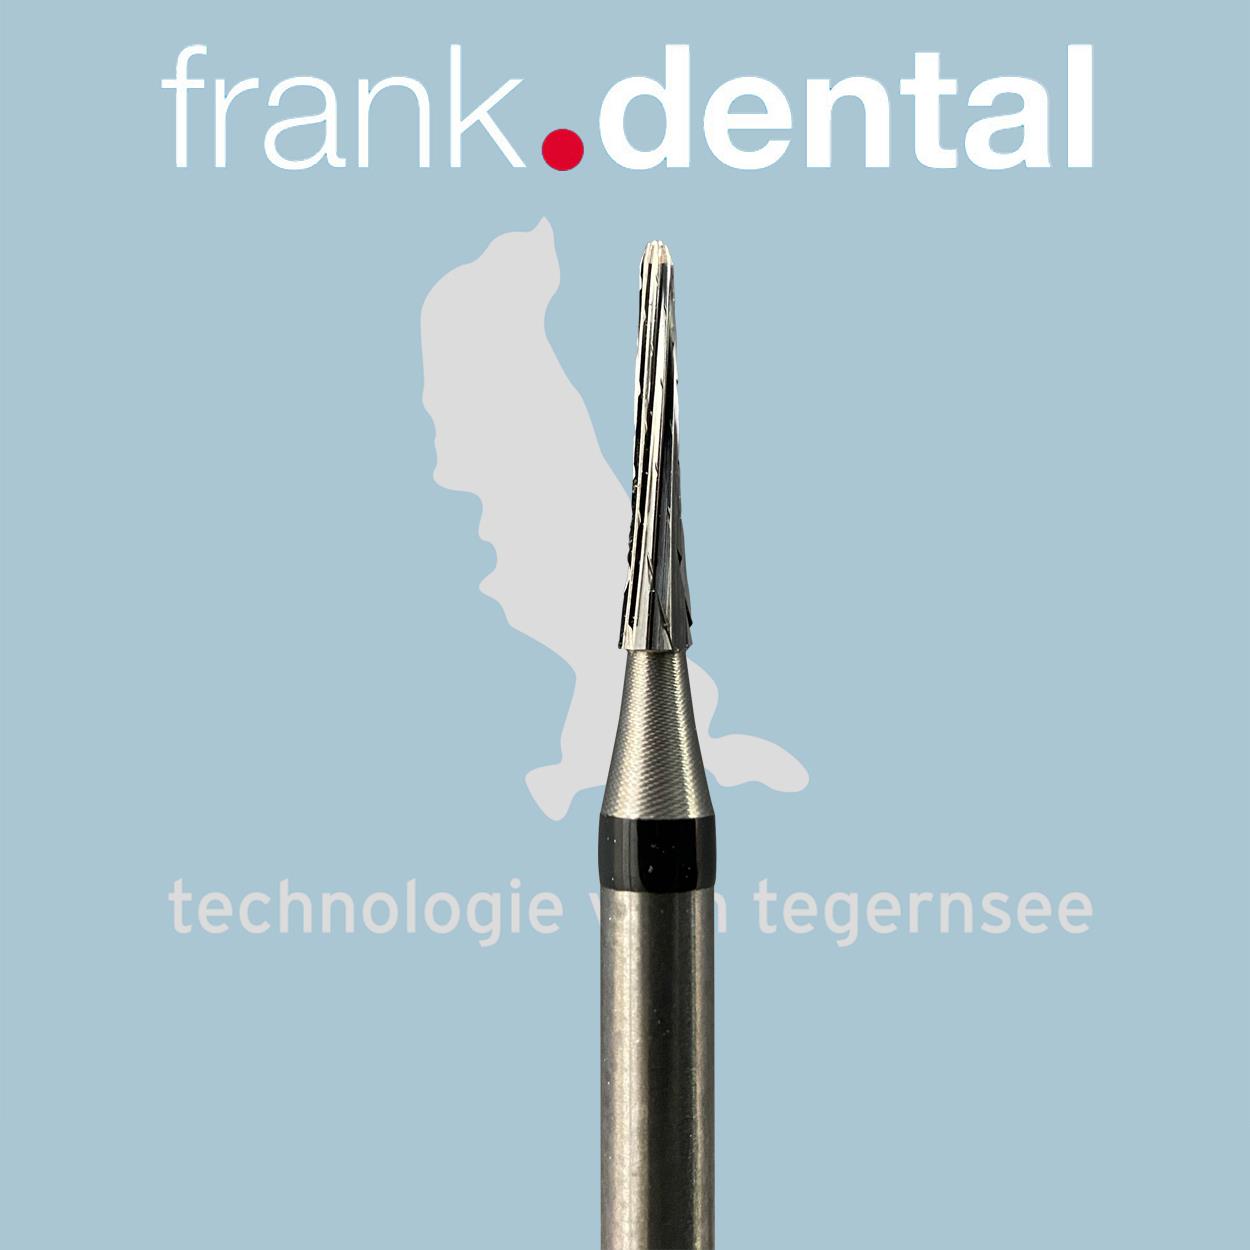 DentrealStore - Frank Dental Tungsten Carpide Monster Hard Burs - 138KT